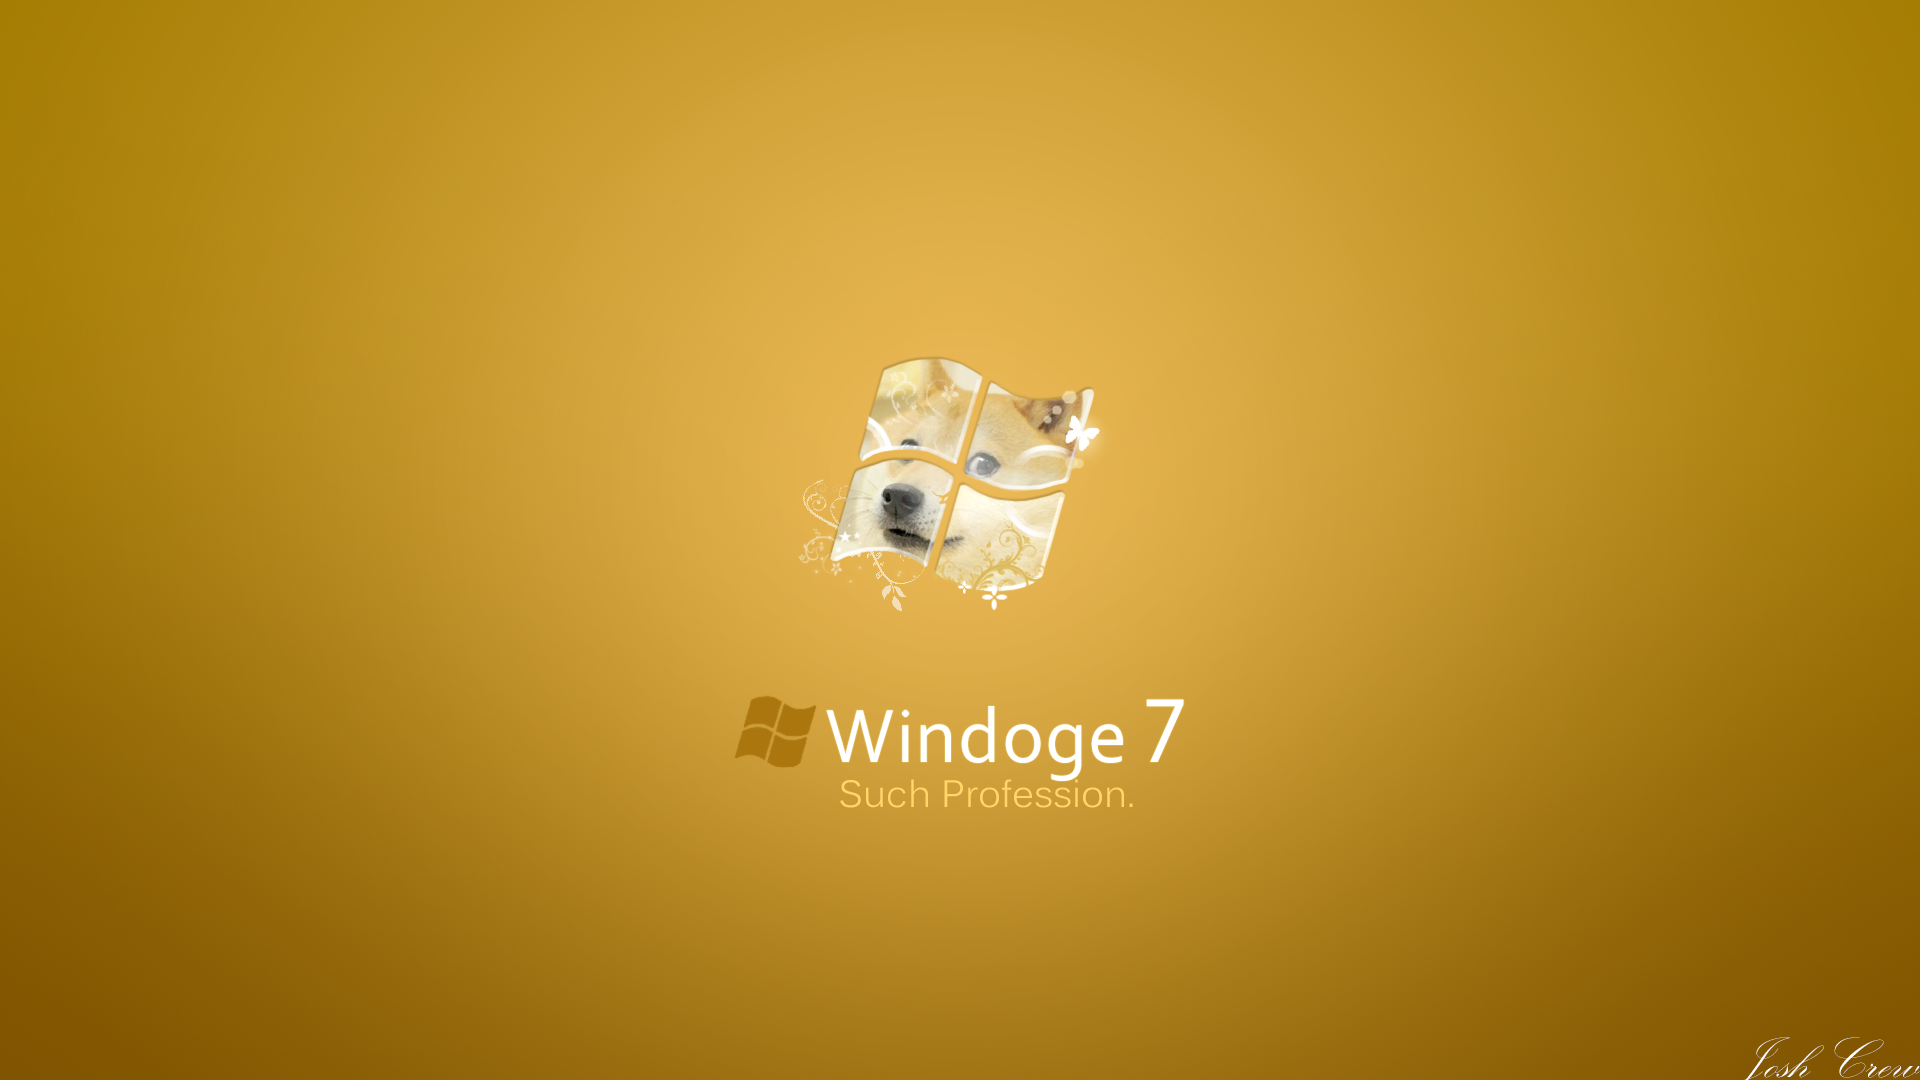 Windoge 7 by JOSHii-Crew on DeviantArt